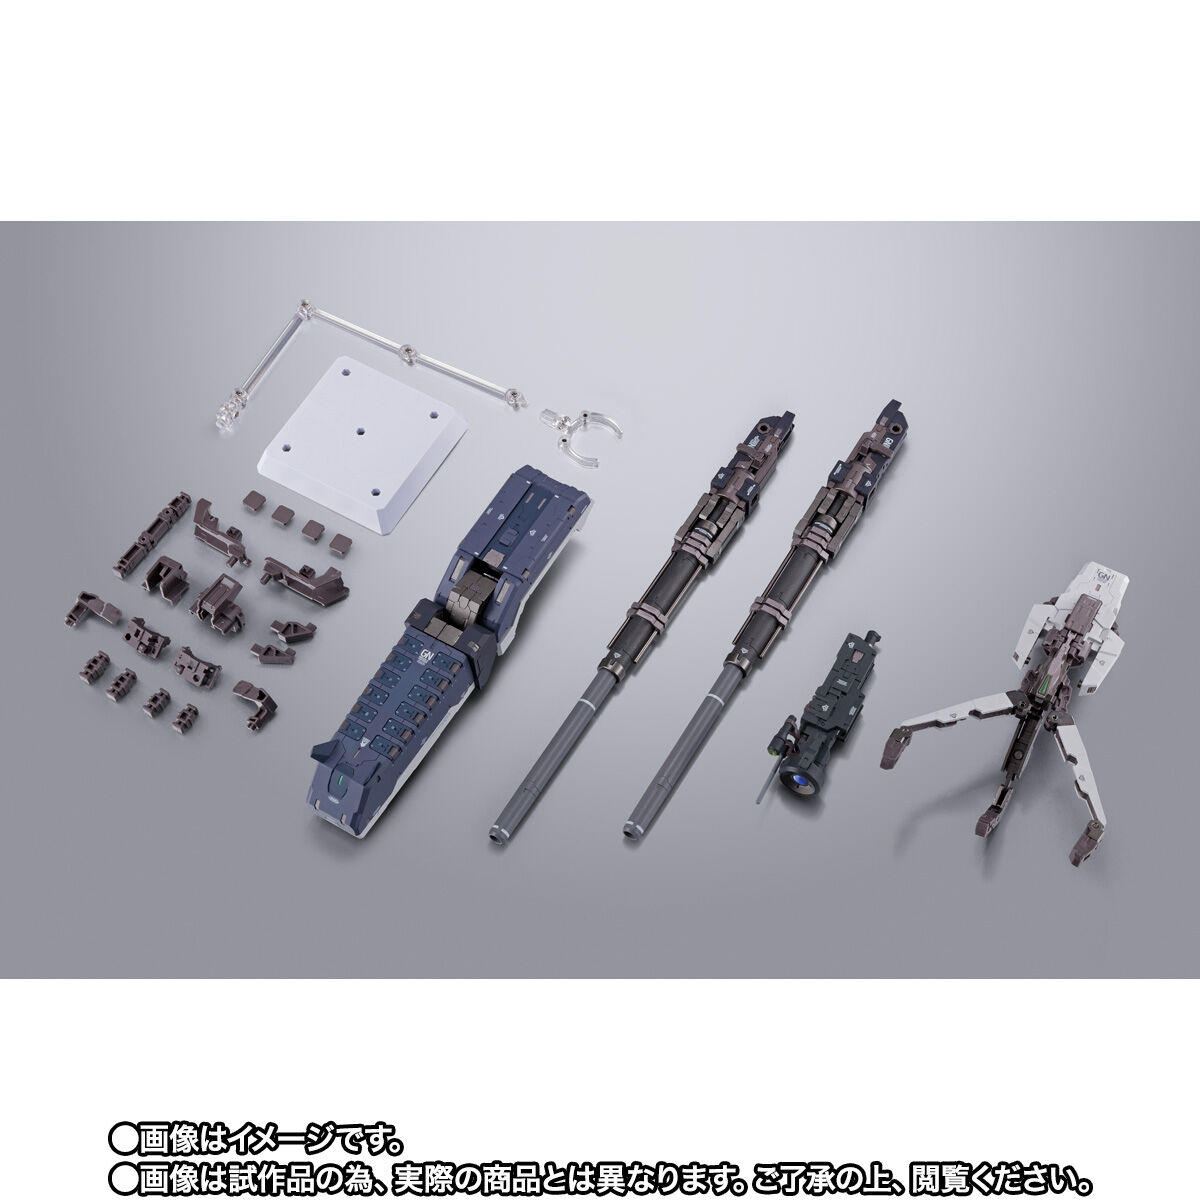 【限定販売】METAL BUILD『GNアームズ TYPE-D オプションセット』 機動戦士ガンダム00 可動フィギュア-001